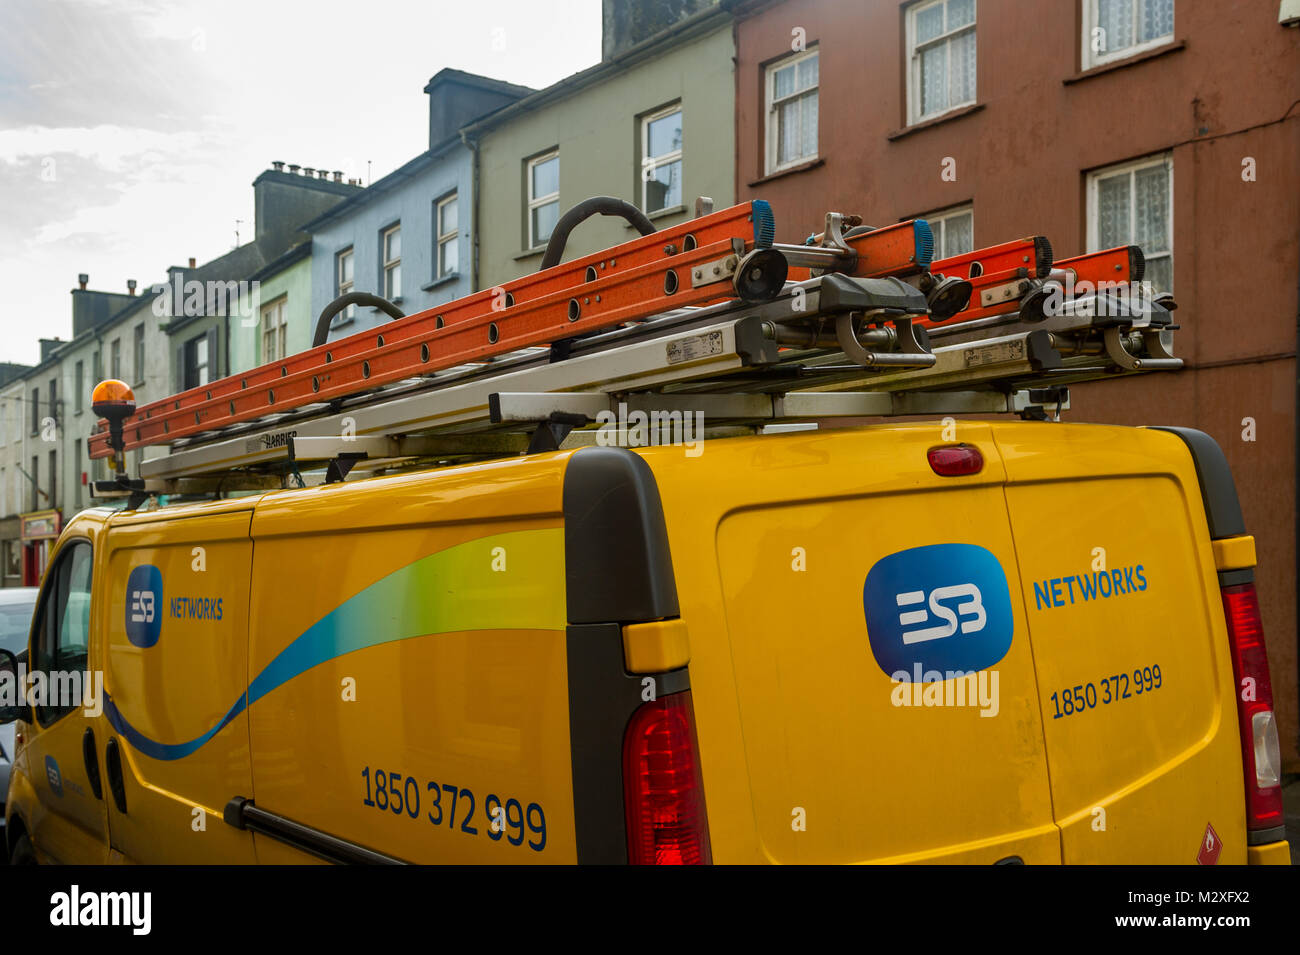 ESB Networks (société nationale d'électricité irlandais) travaille avec des échelles sur le toit van stationné à Skibbereen, dans le comté de Cork, Irlande. Banque D'Images